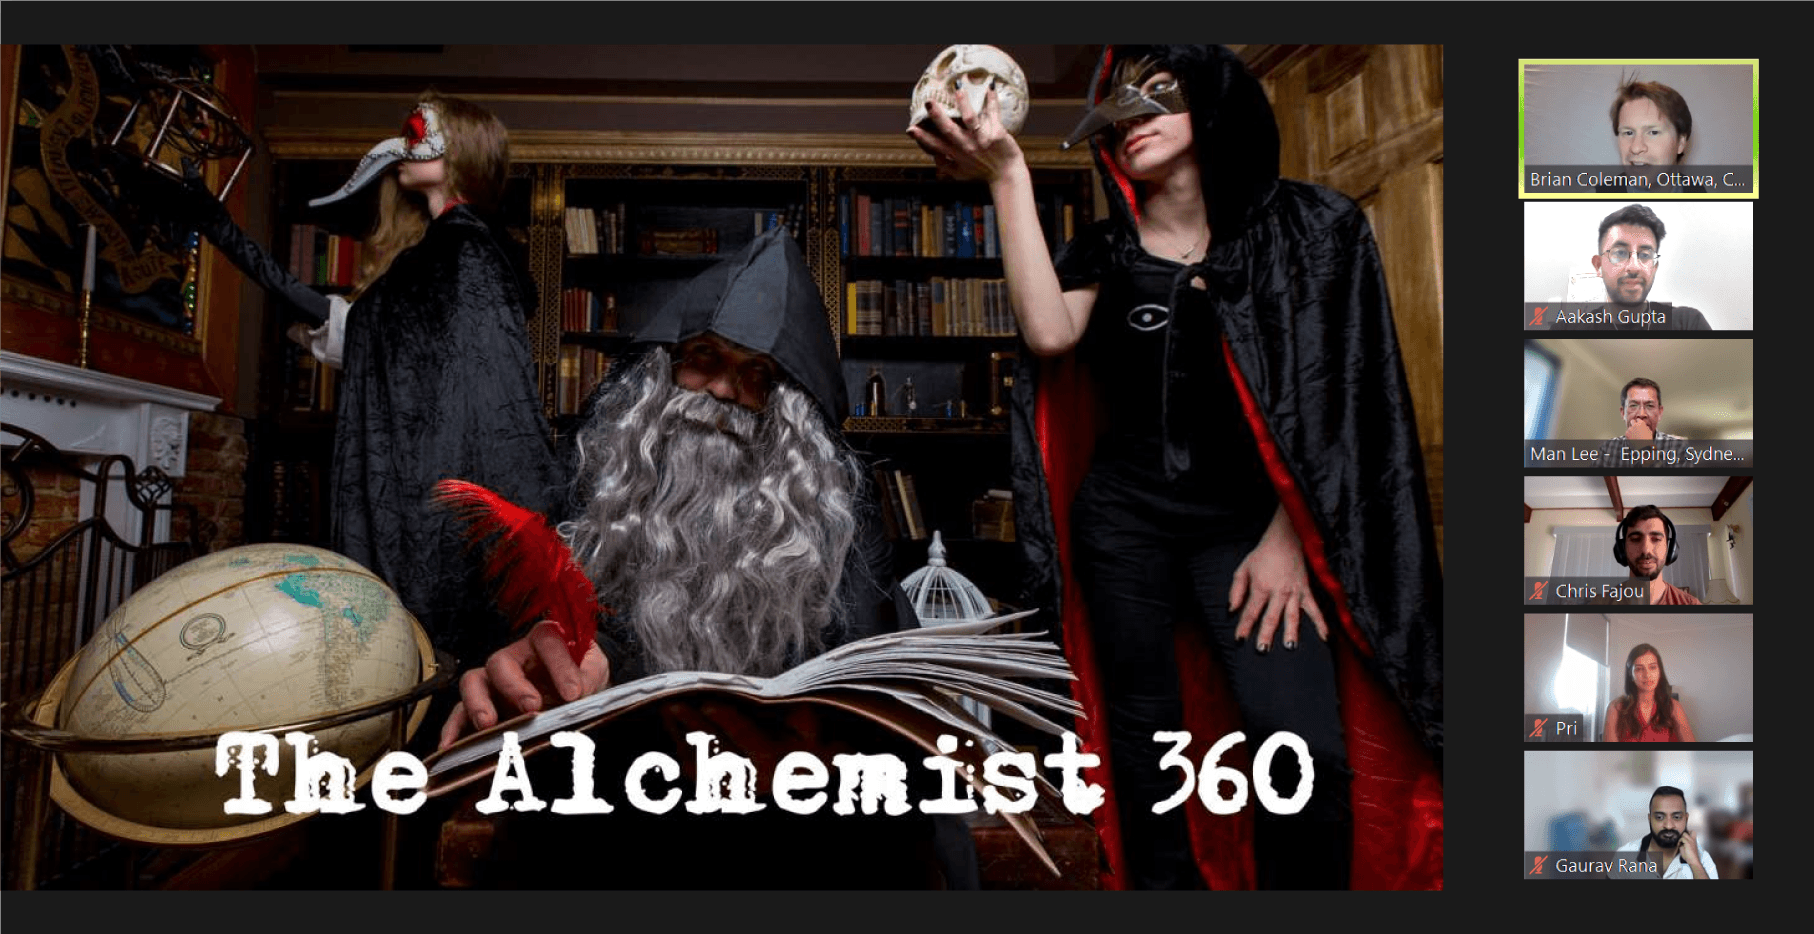 Virtual Escape Room – The Alchemist